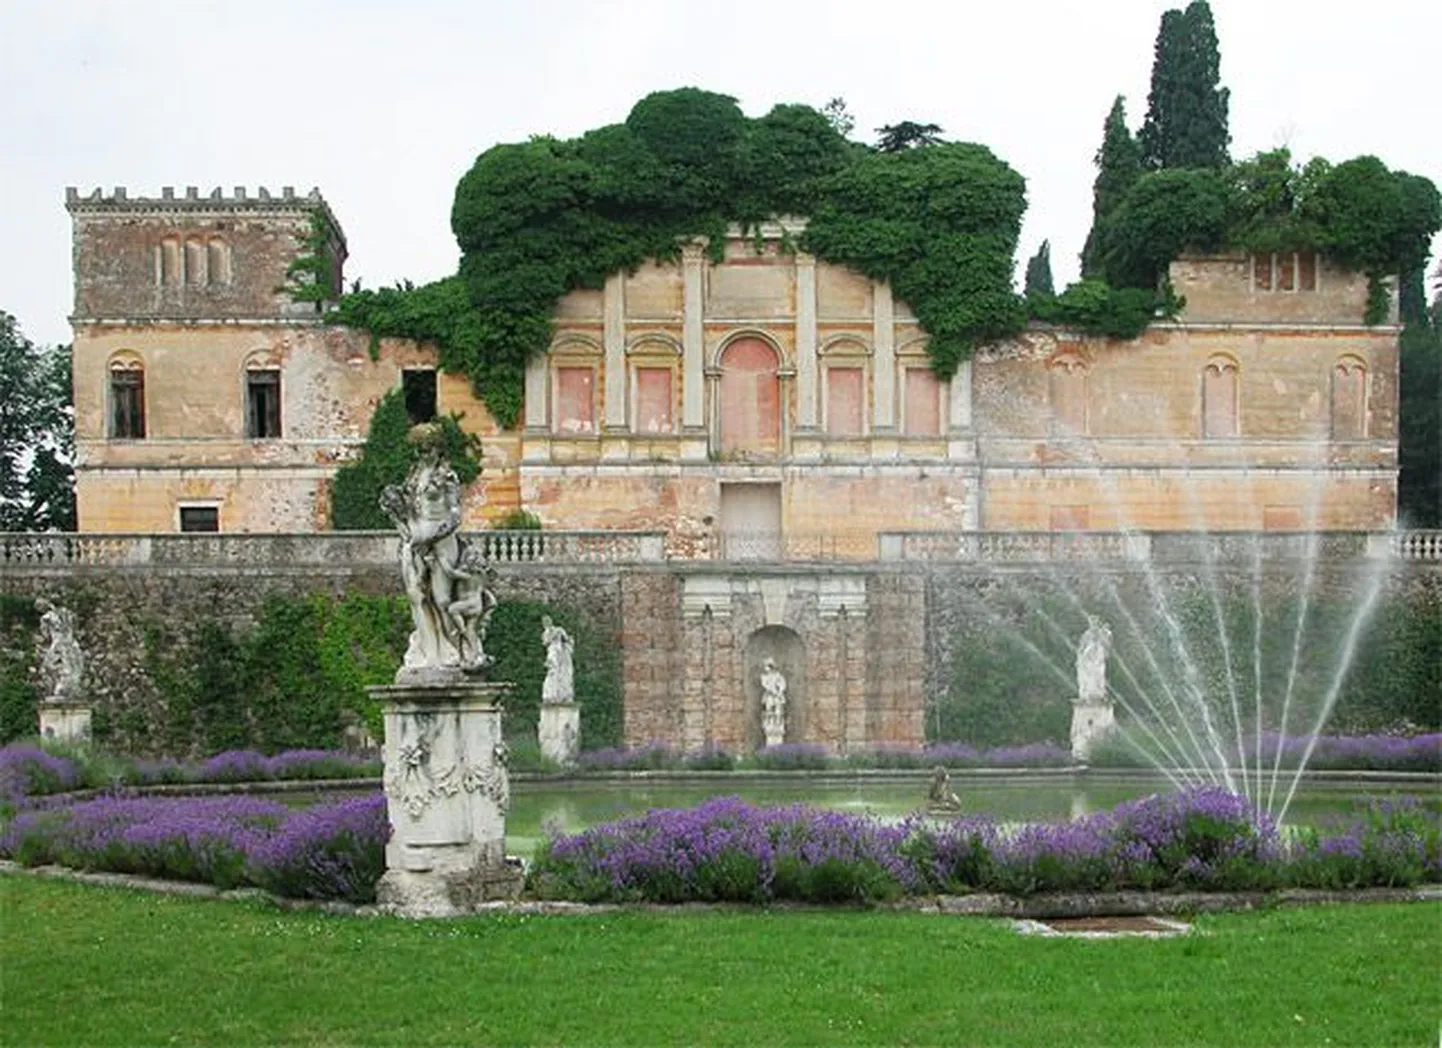 Villa Trissino Marzotto.